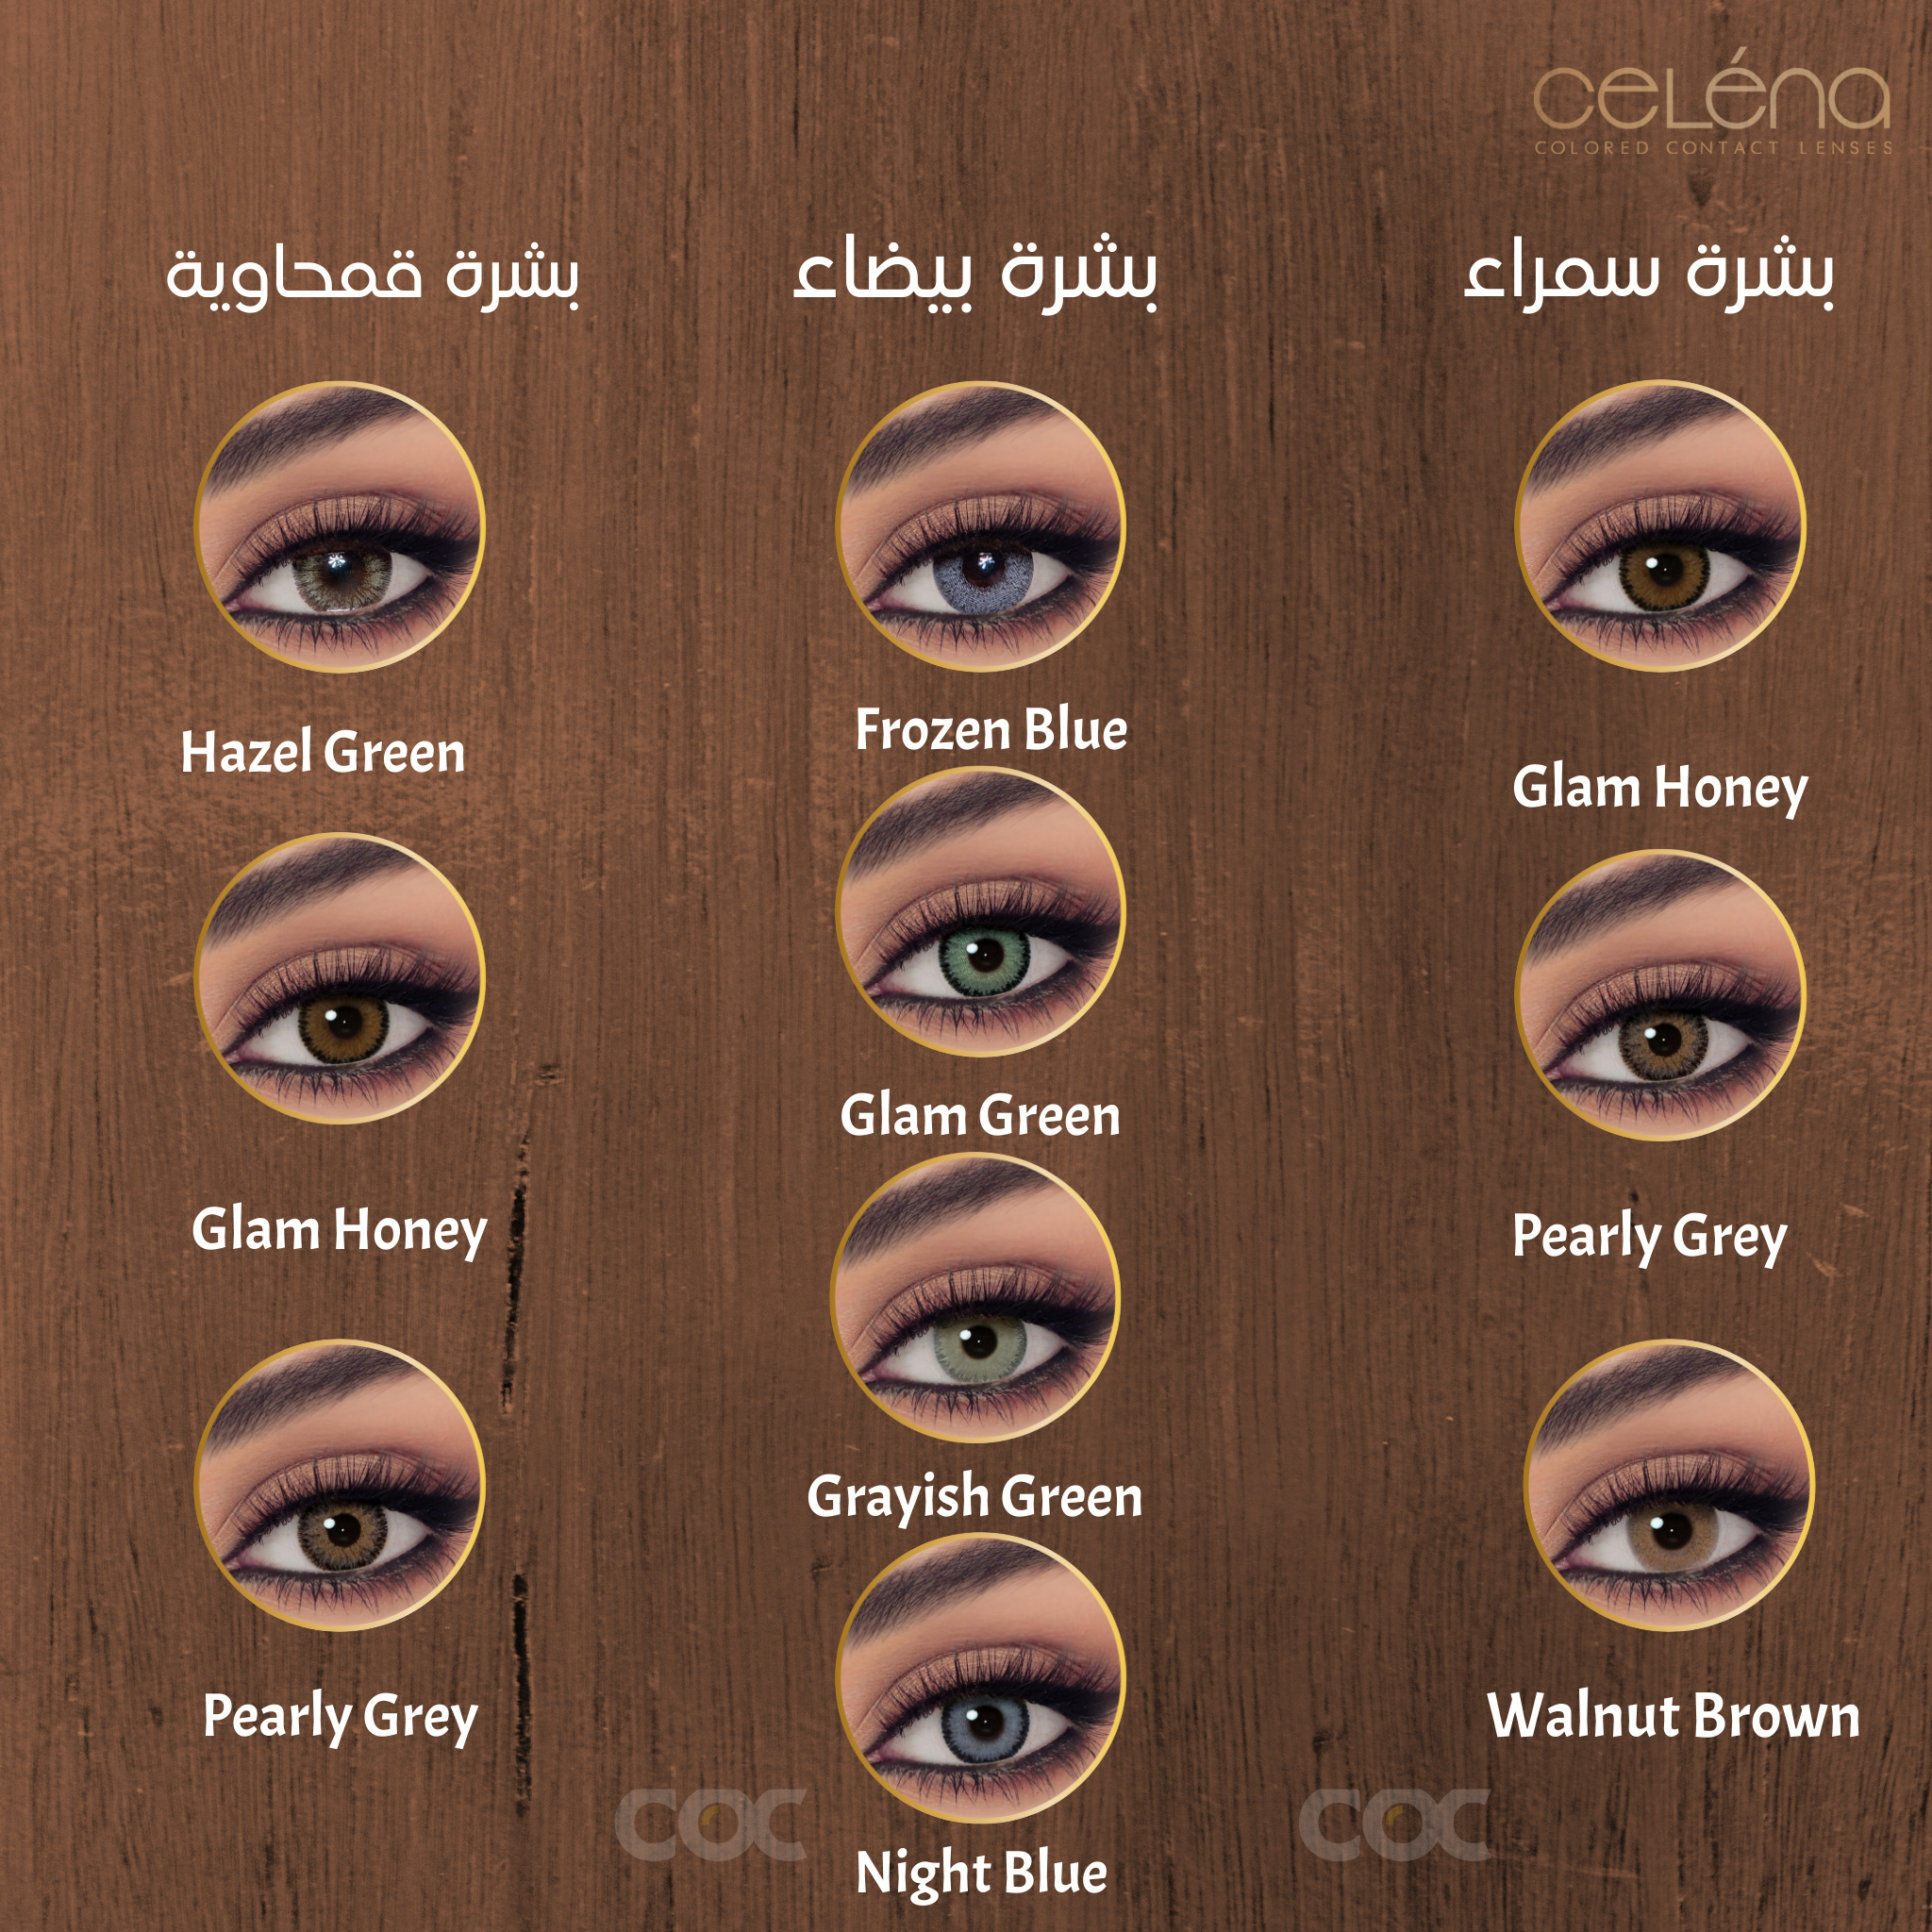 CELENA Shaded: Glam Honey - Monthly - COC Eyewear